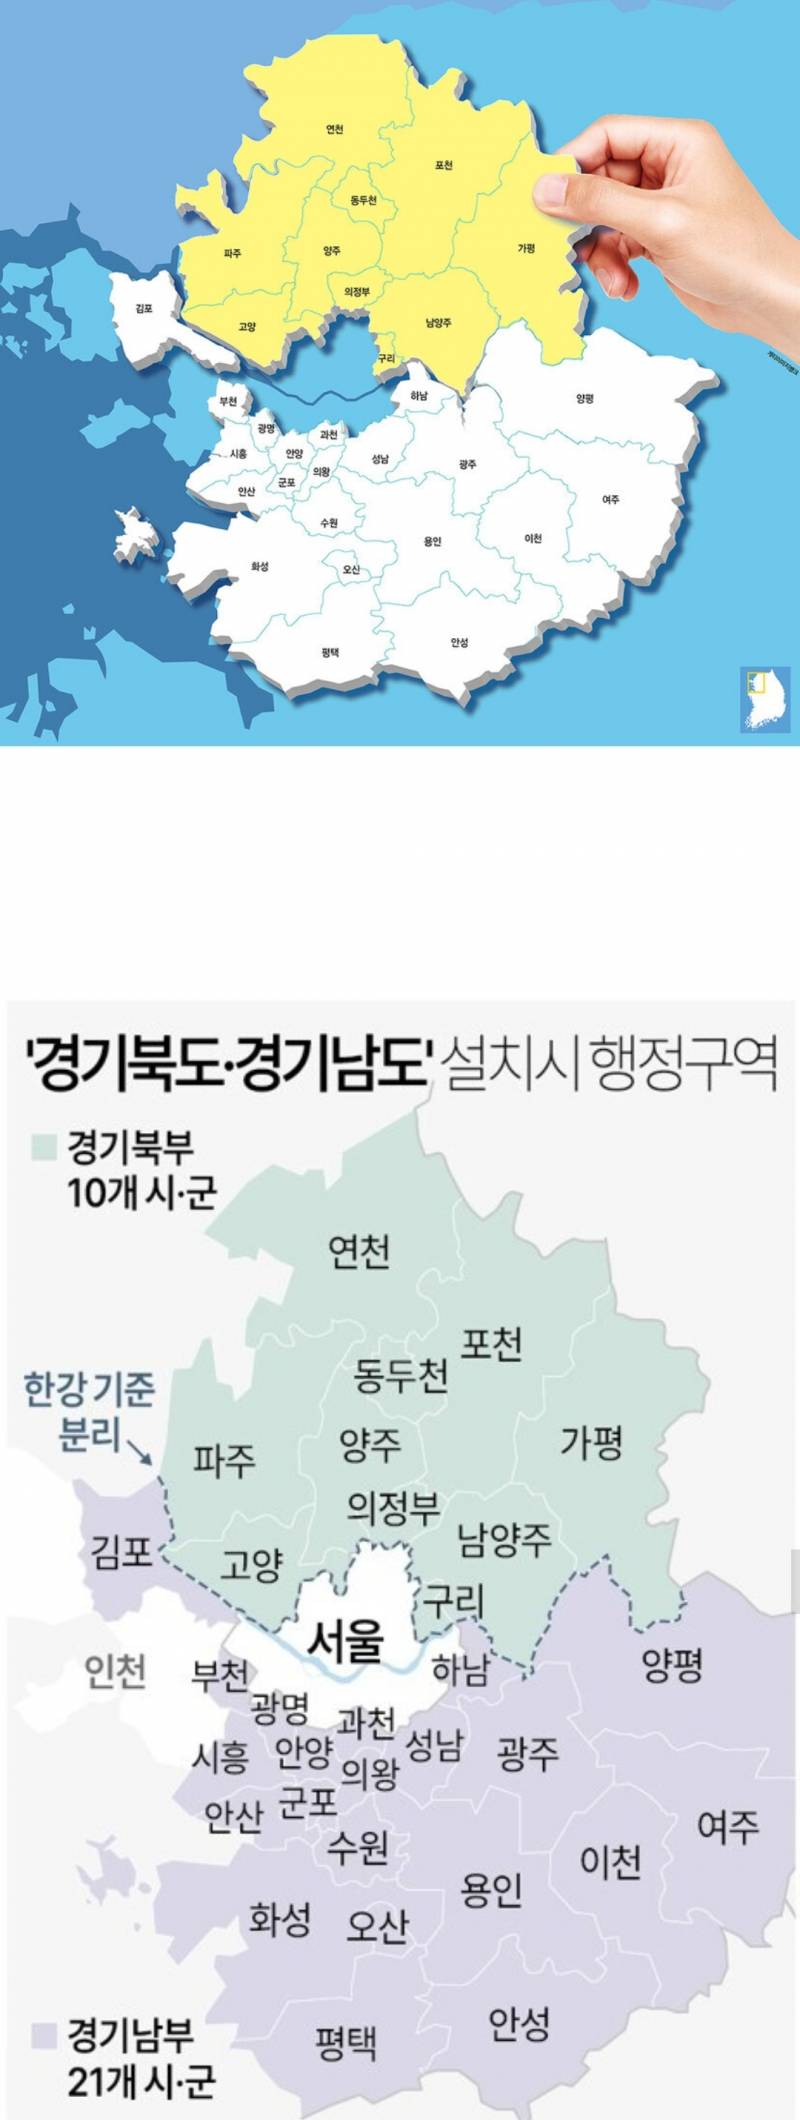 5월 1일, 대한민국 중대 발표 예정 | 인스티즈